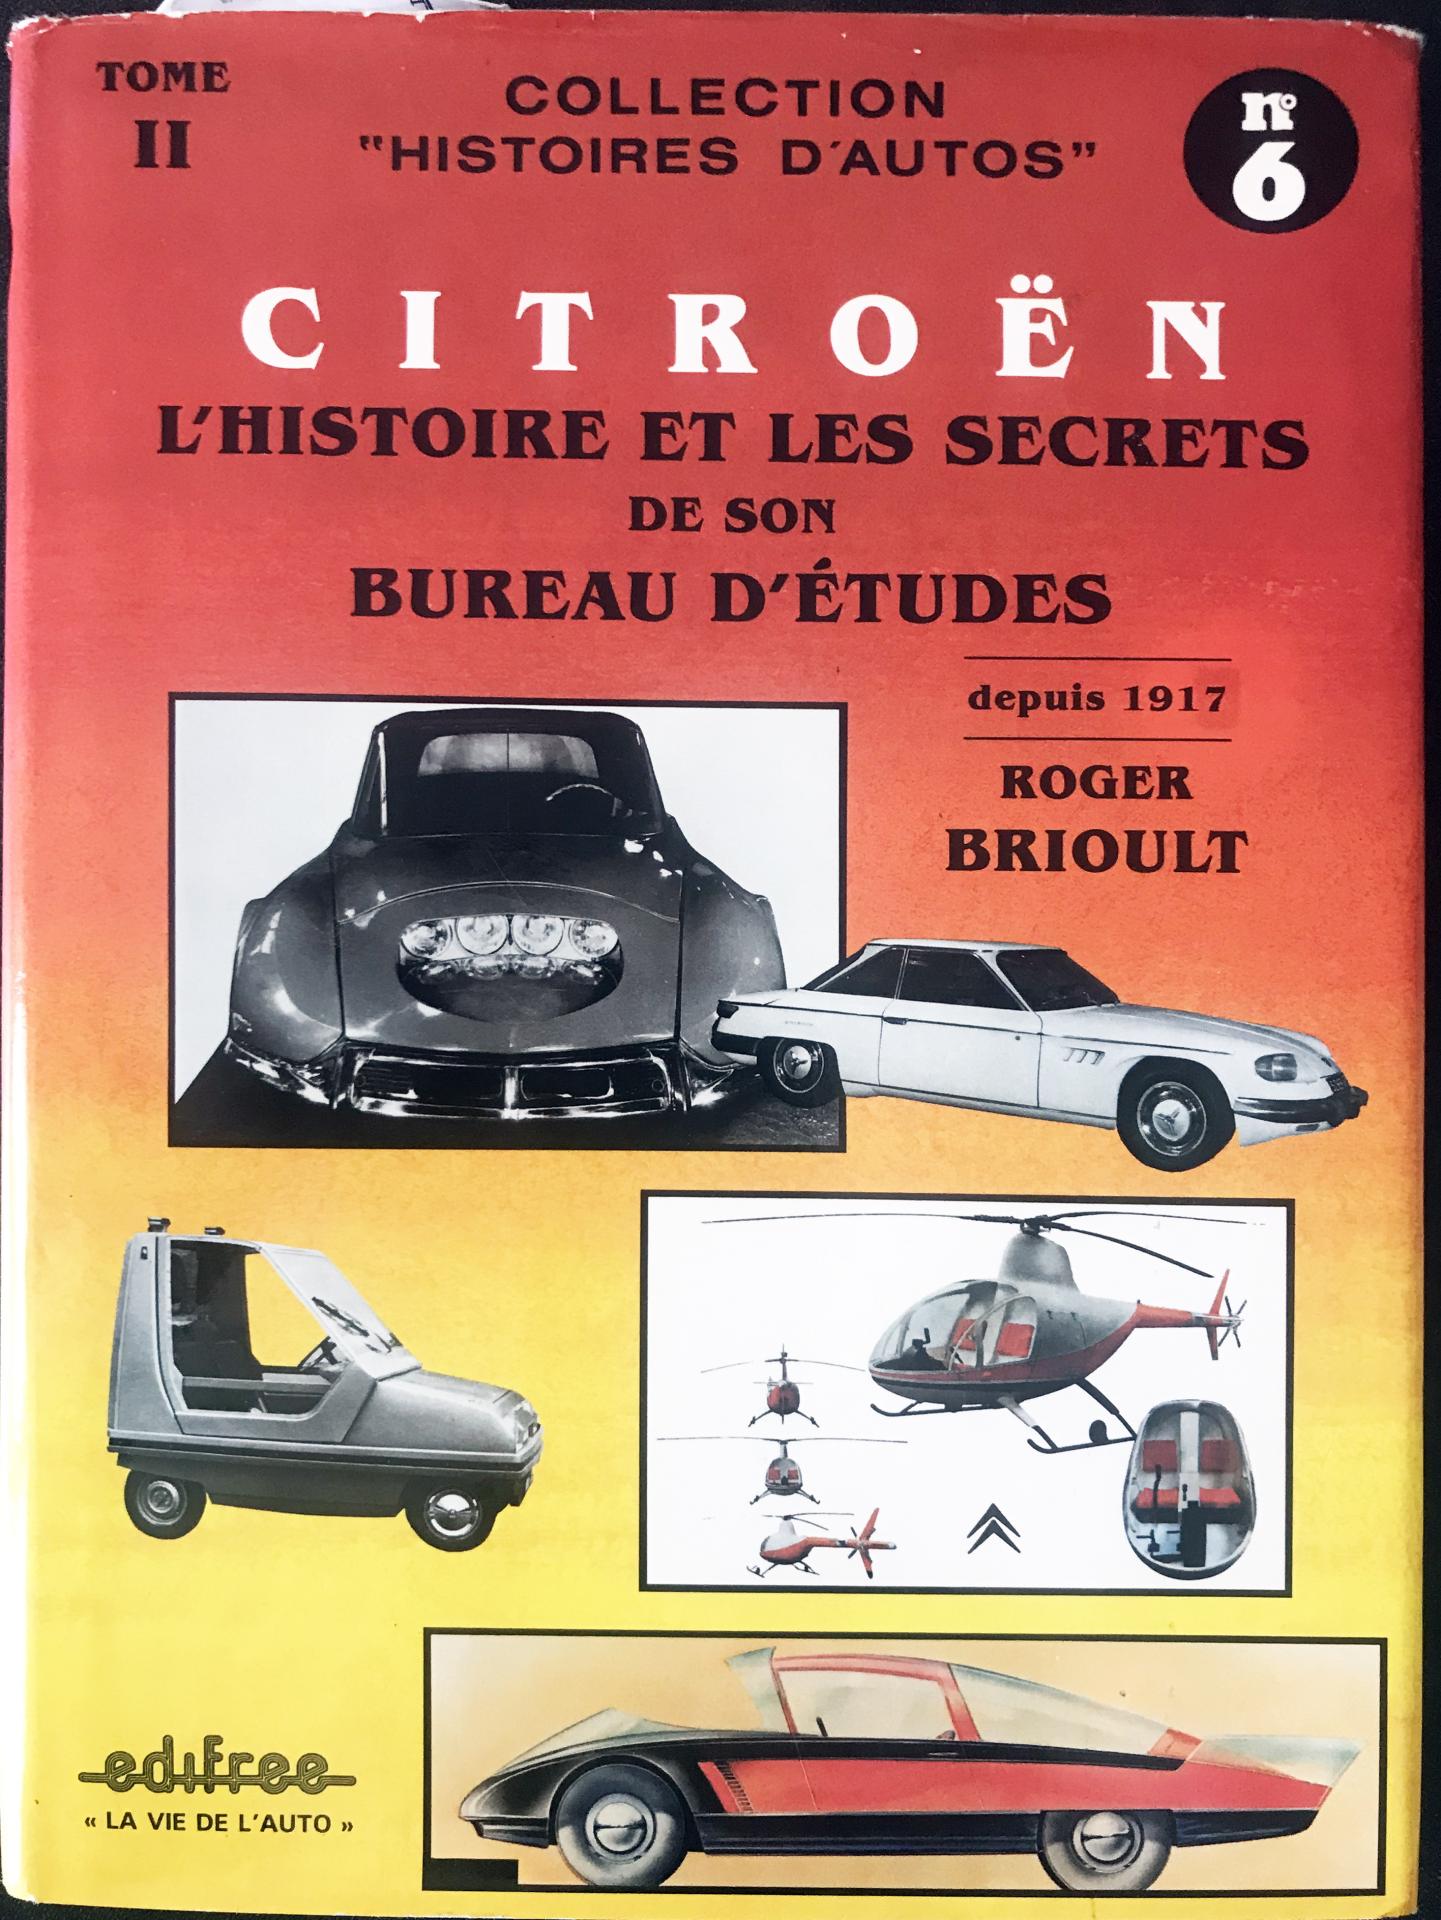 1987 Citroën L'Histoire et les secrets de son bureau d'études tome 2